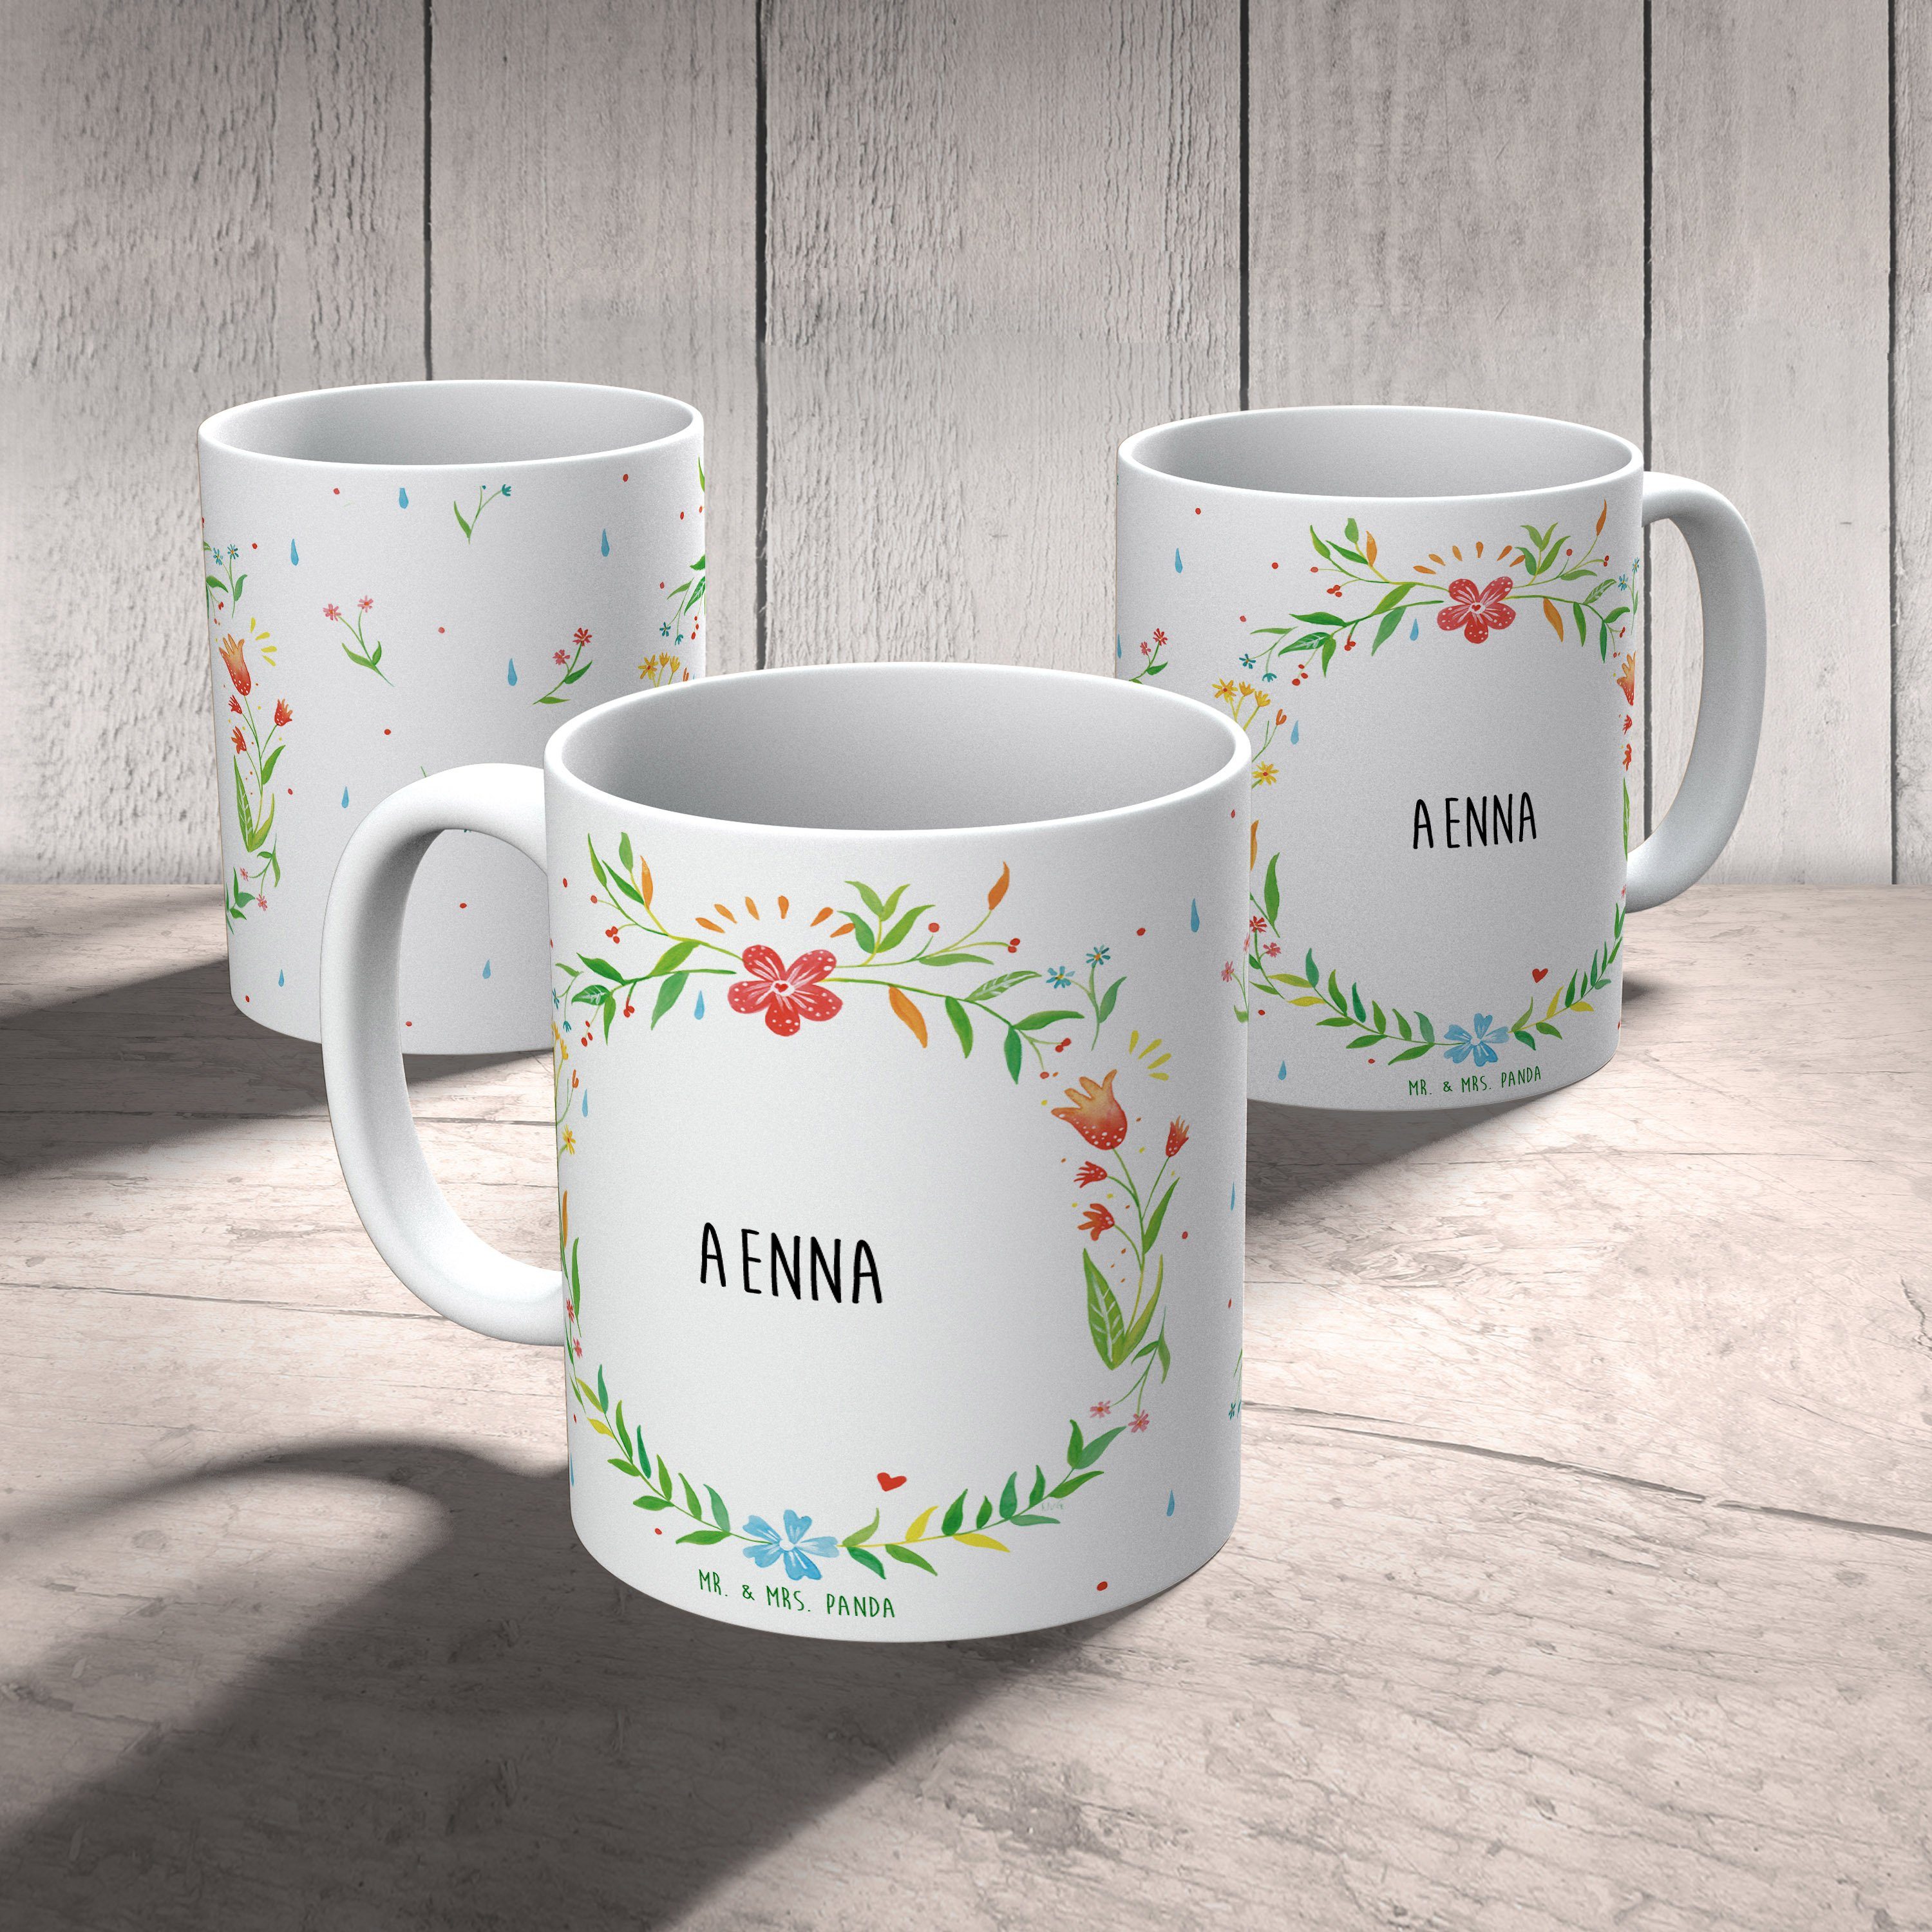 Mr. & Mrs. Motive, Panda Aenna Tasse, Geschenk, Ta, - Tasse Keramik Keramiktasse, Büro Geschenk Tasse